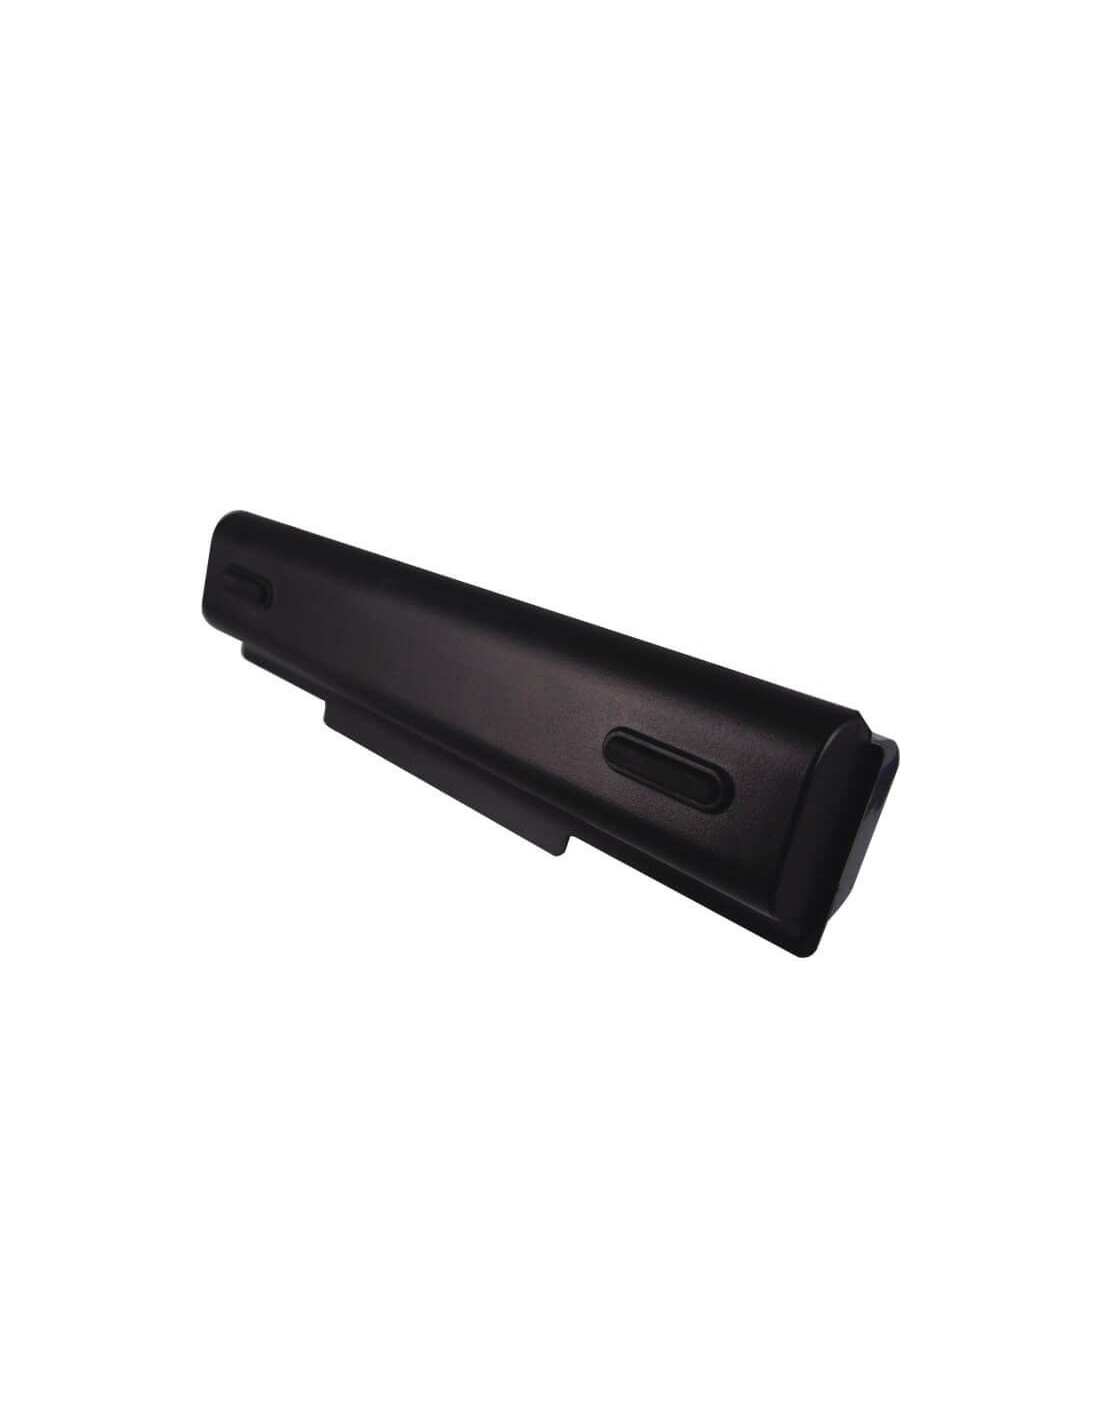 Black Battery for Lenovo Ideapad B450, Ideapad B450a, Ideapad B450l 11.1V, 8800mAh - 97.68Wh